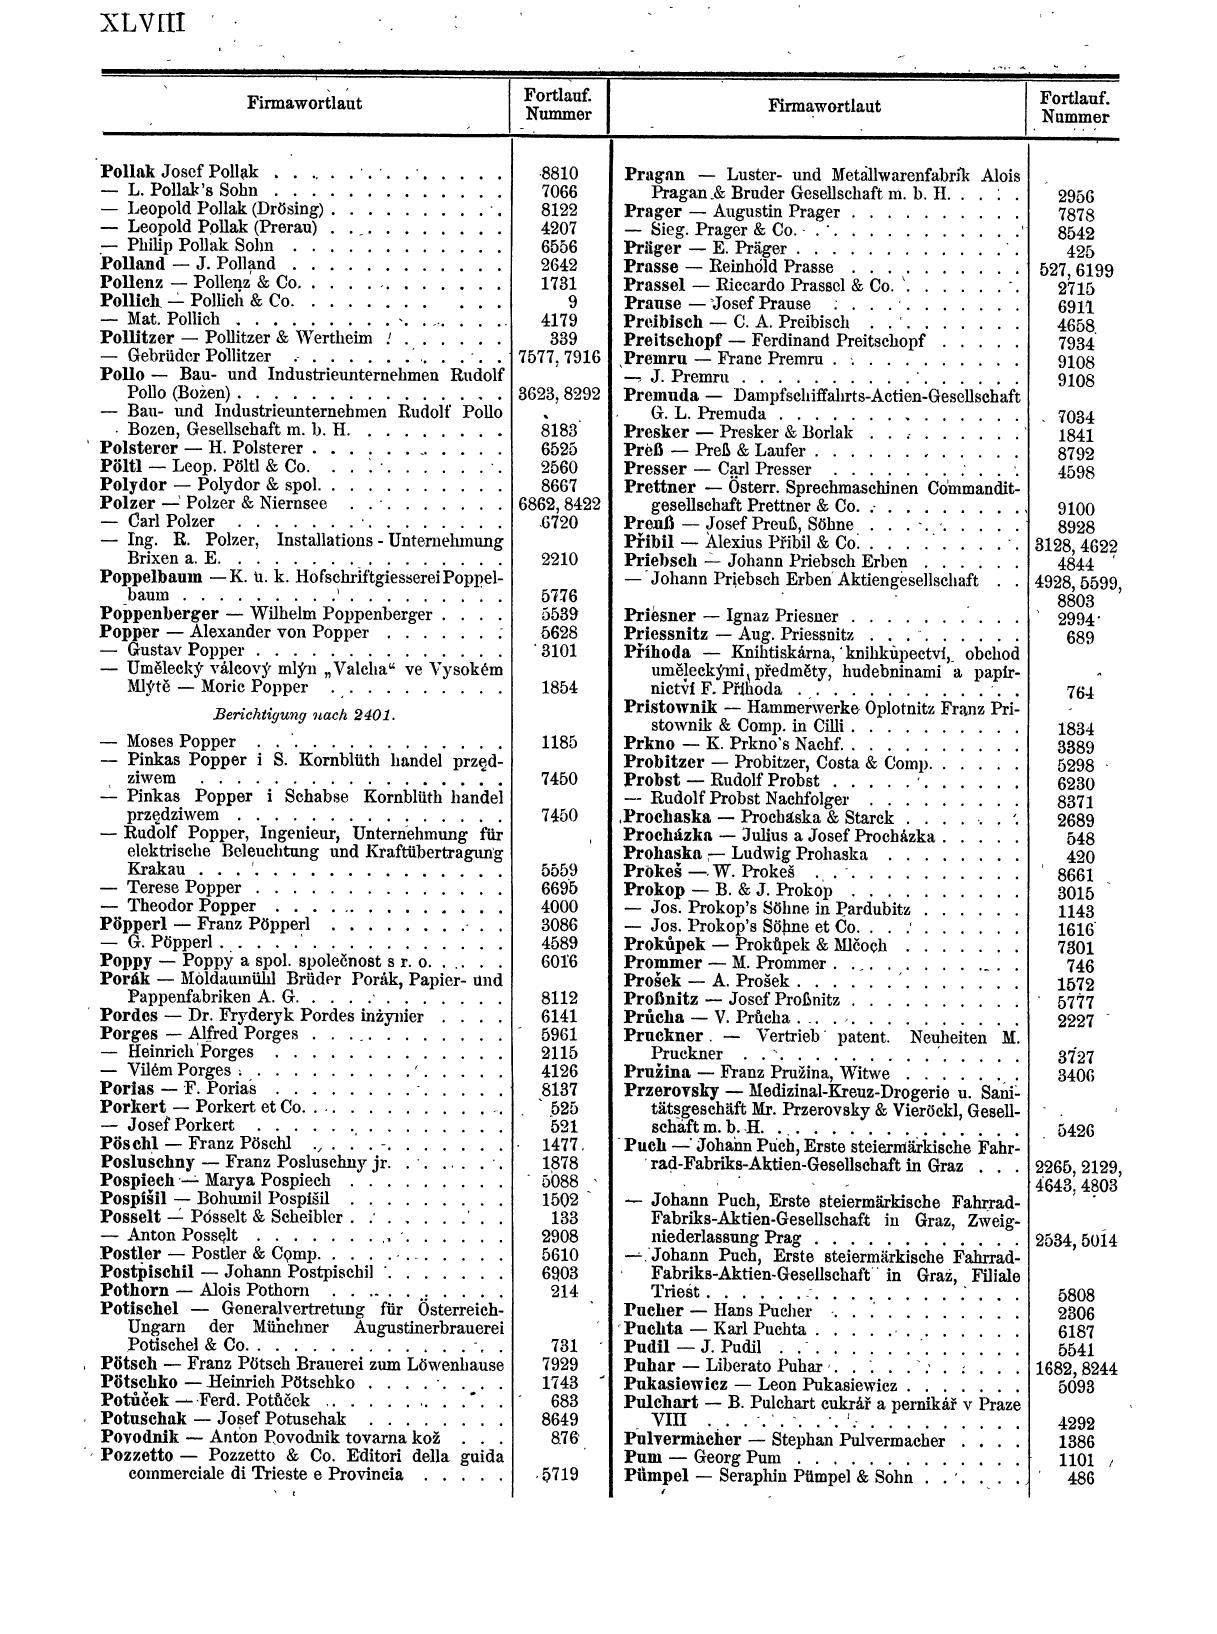 Zentralblatt für die Eintragungen in das Handelsregister 1913, Teil 1 - Seite 56